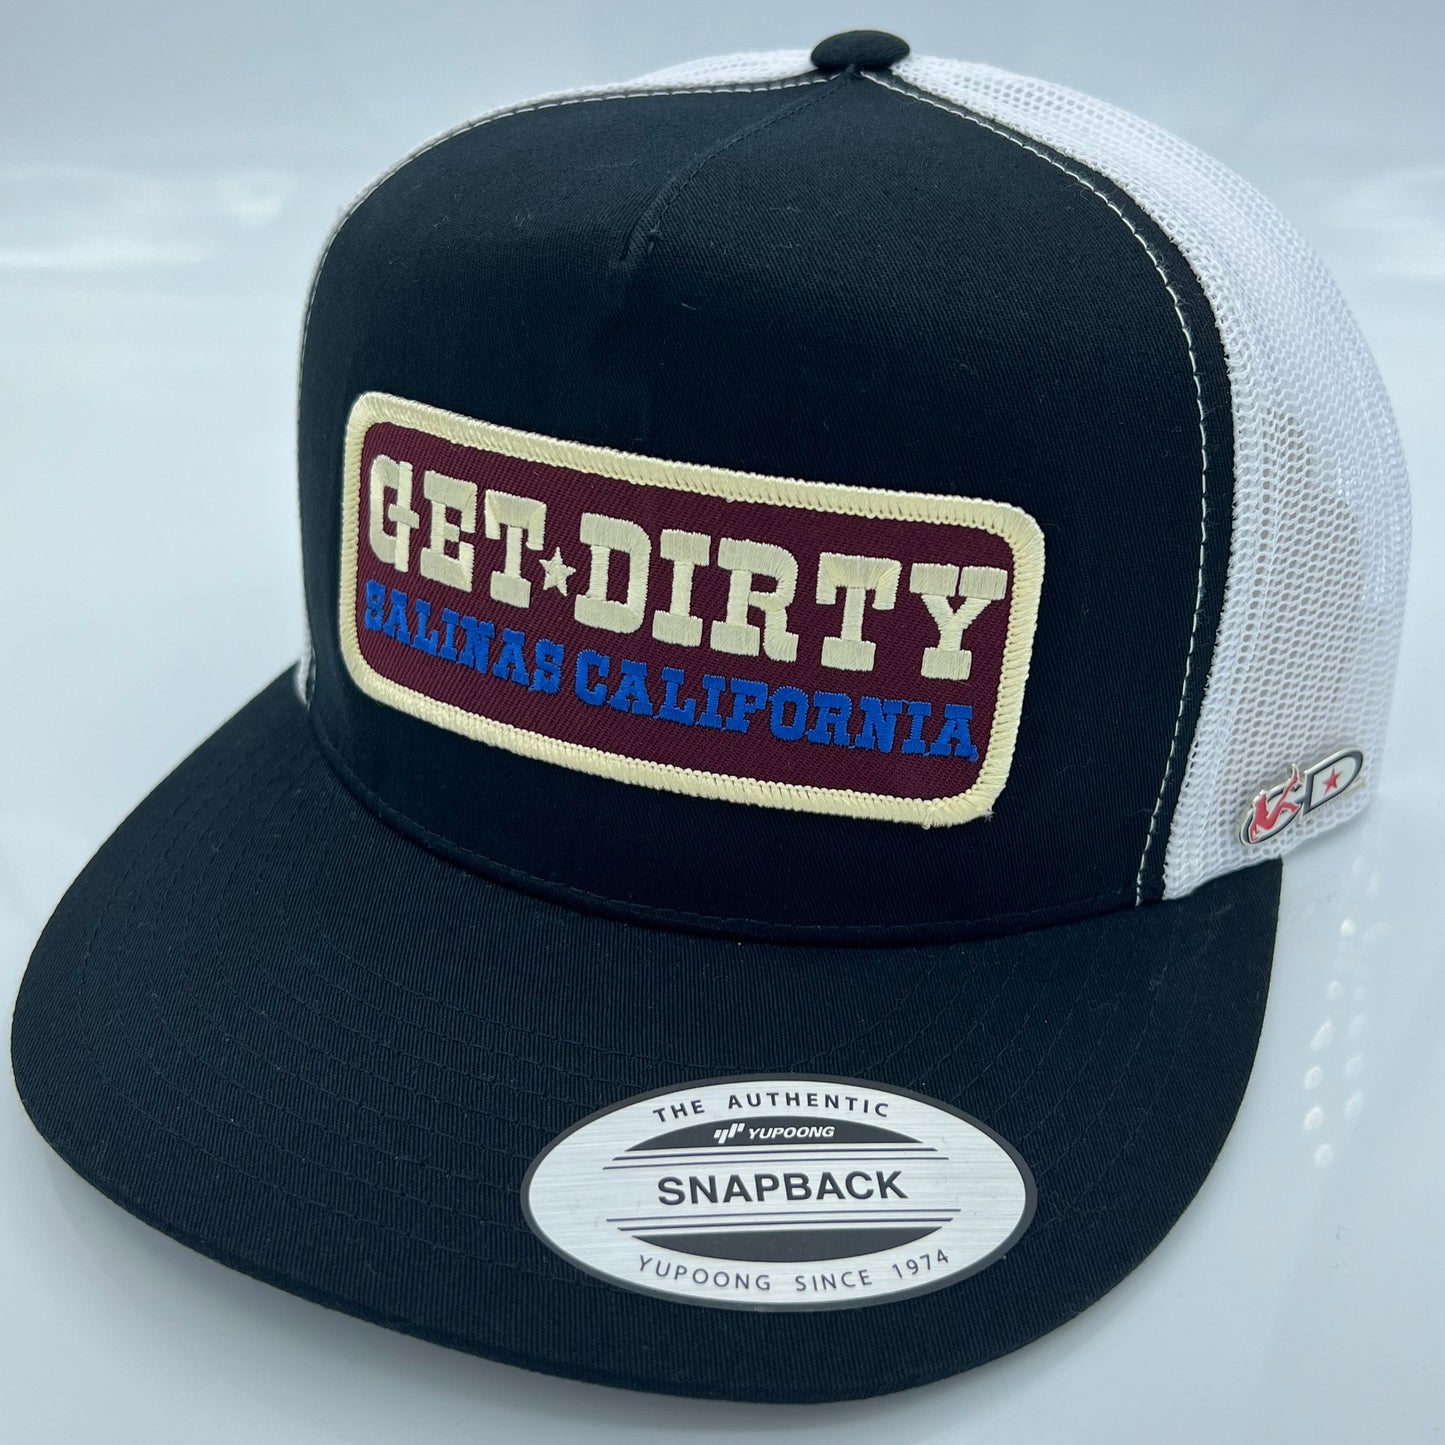 Get Dirty Merchandise MRN Arabella Blk/Wht Trucker Hat